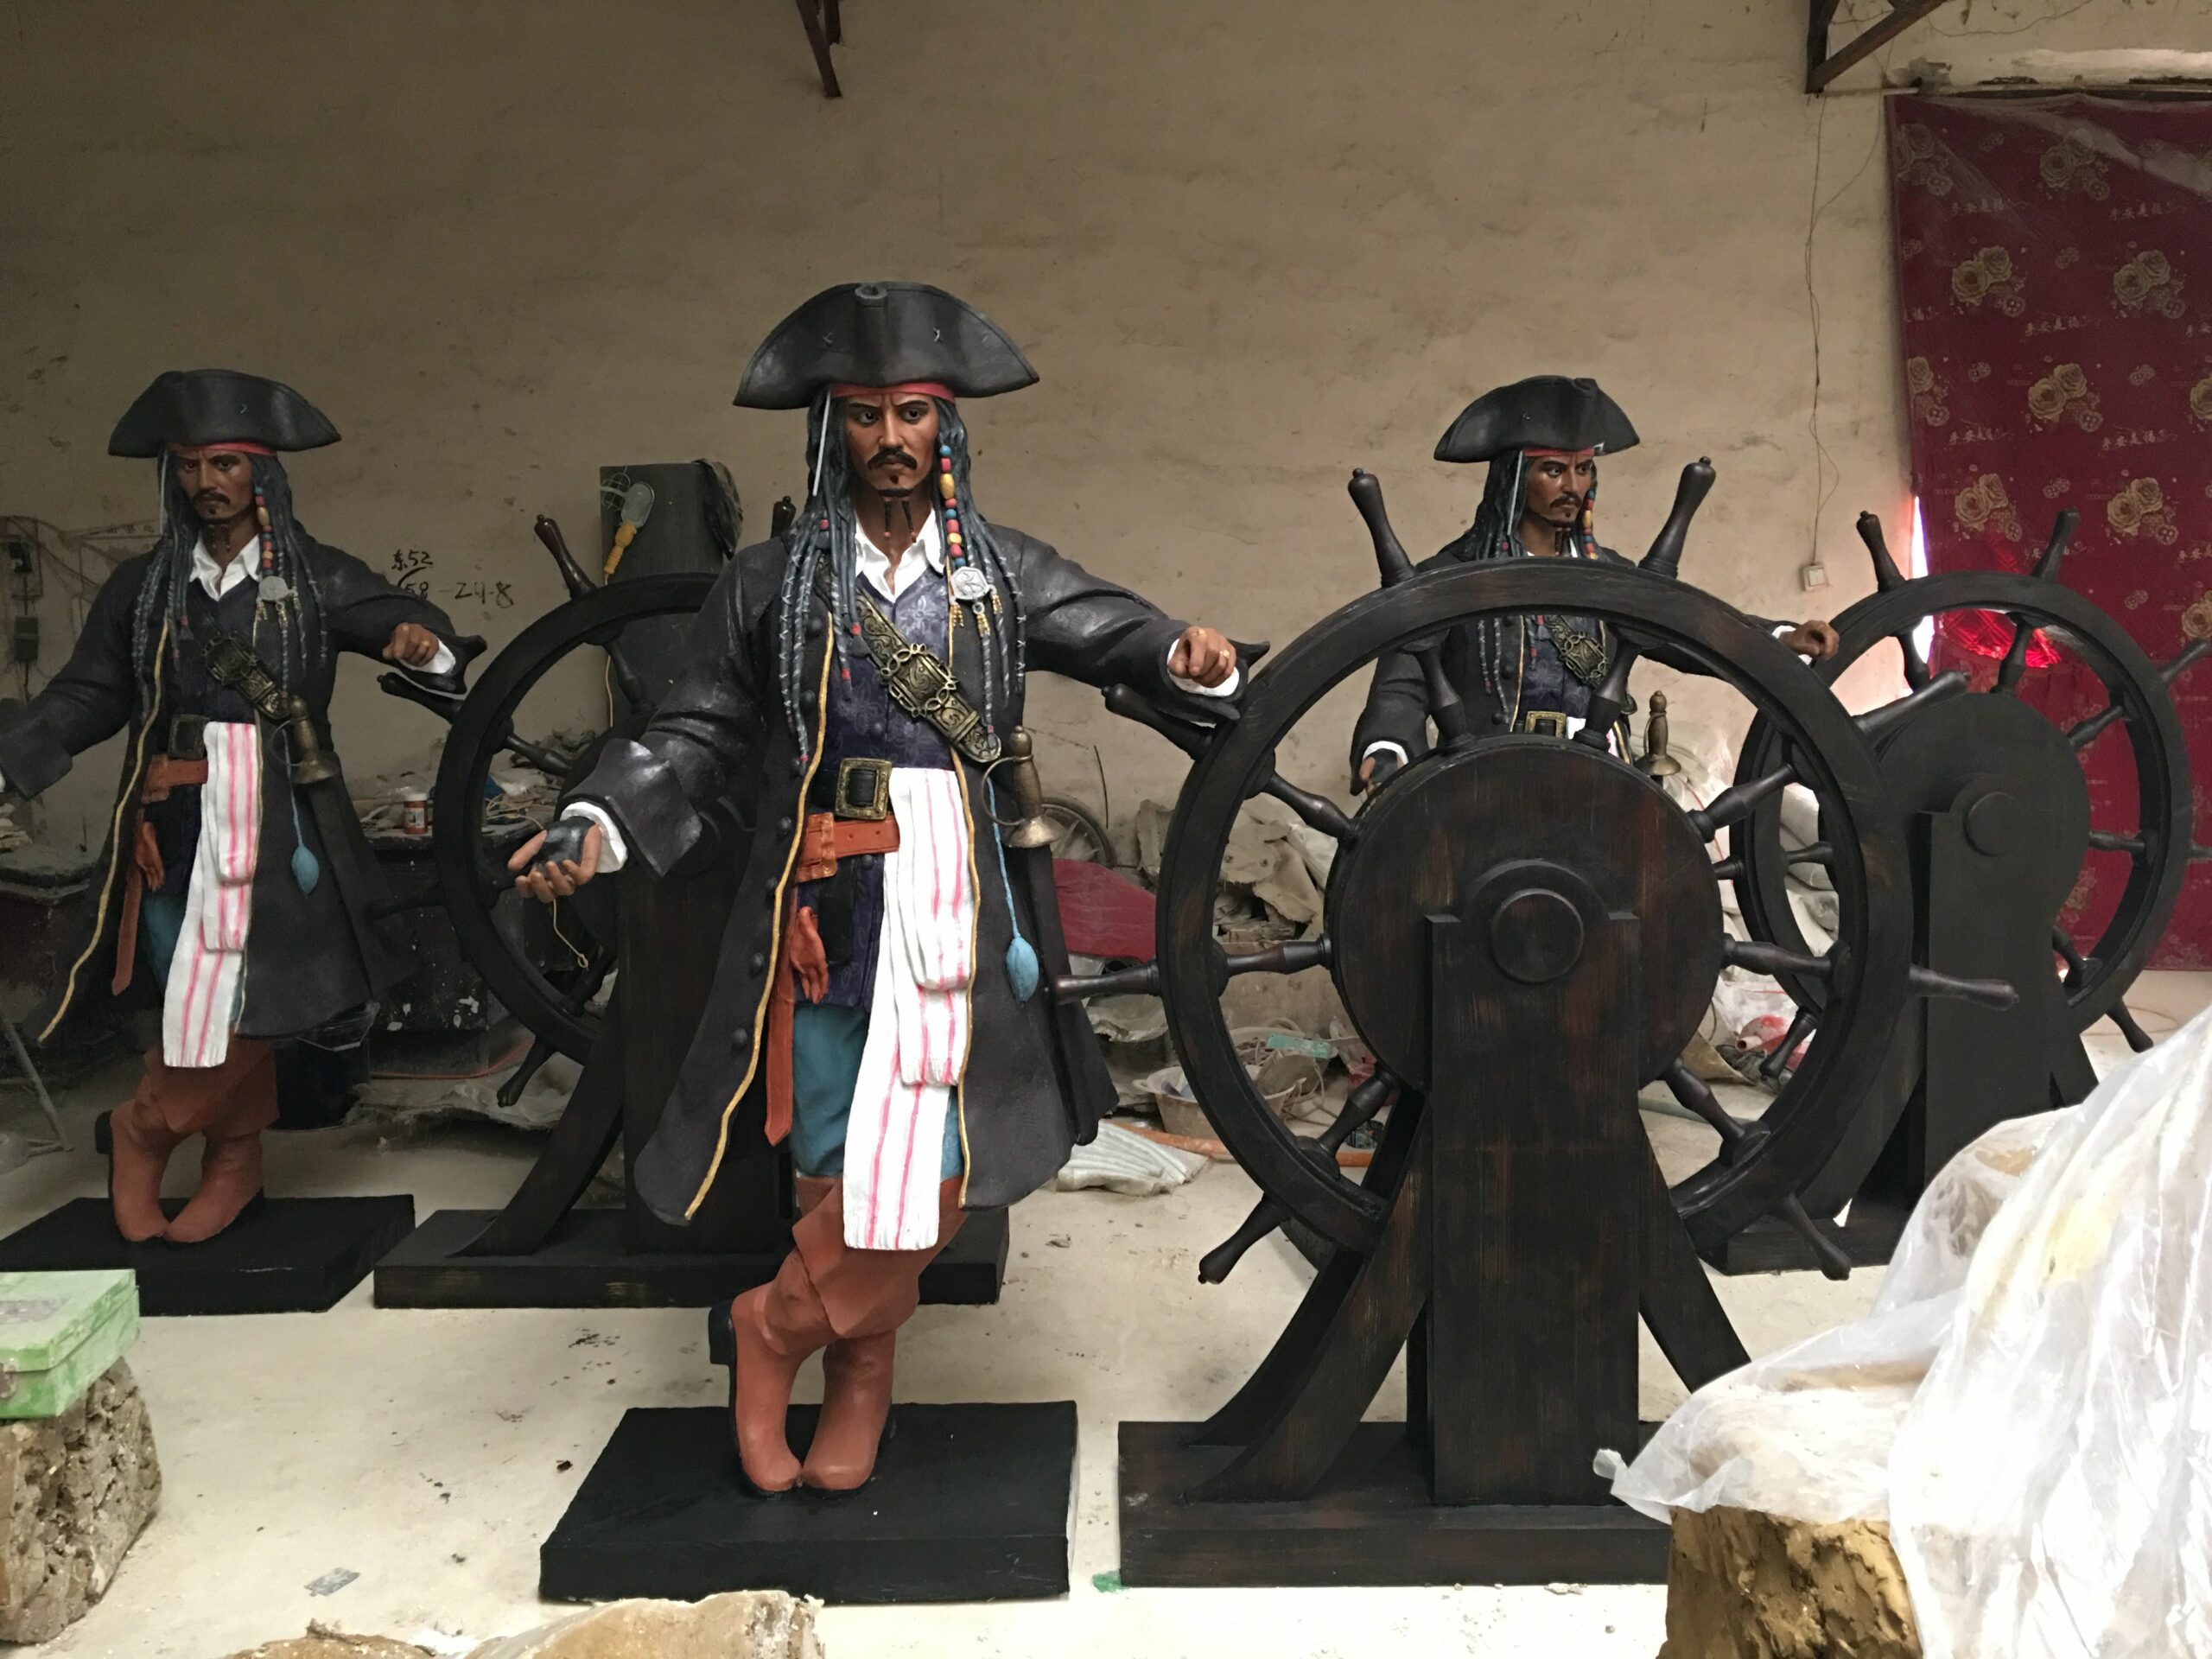 fiberglass pirate sculpture